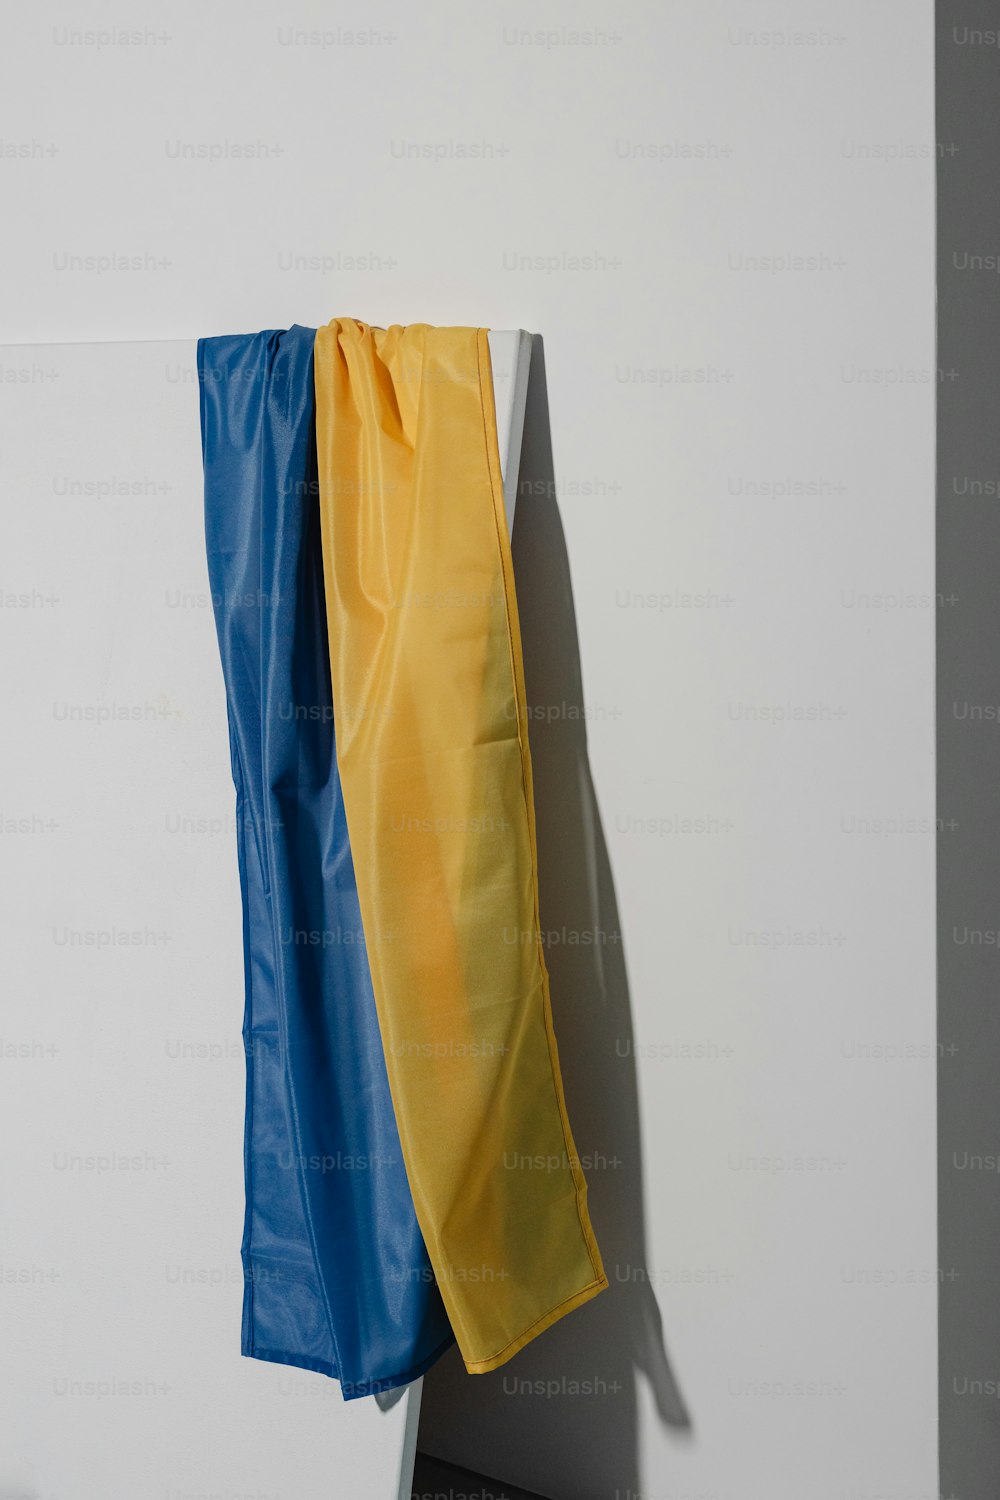 Un trozo de tela amarilla y azul colgado en una pared